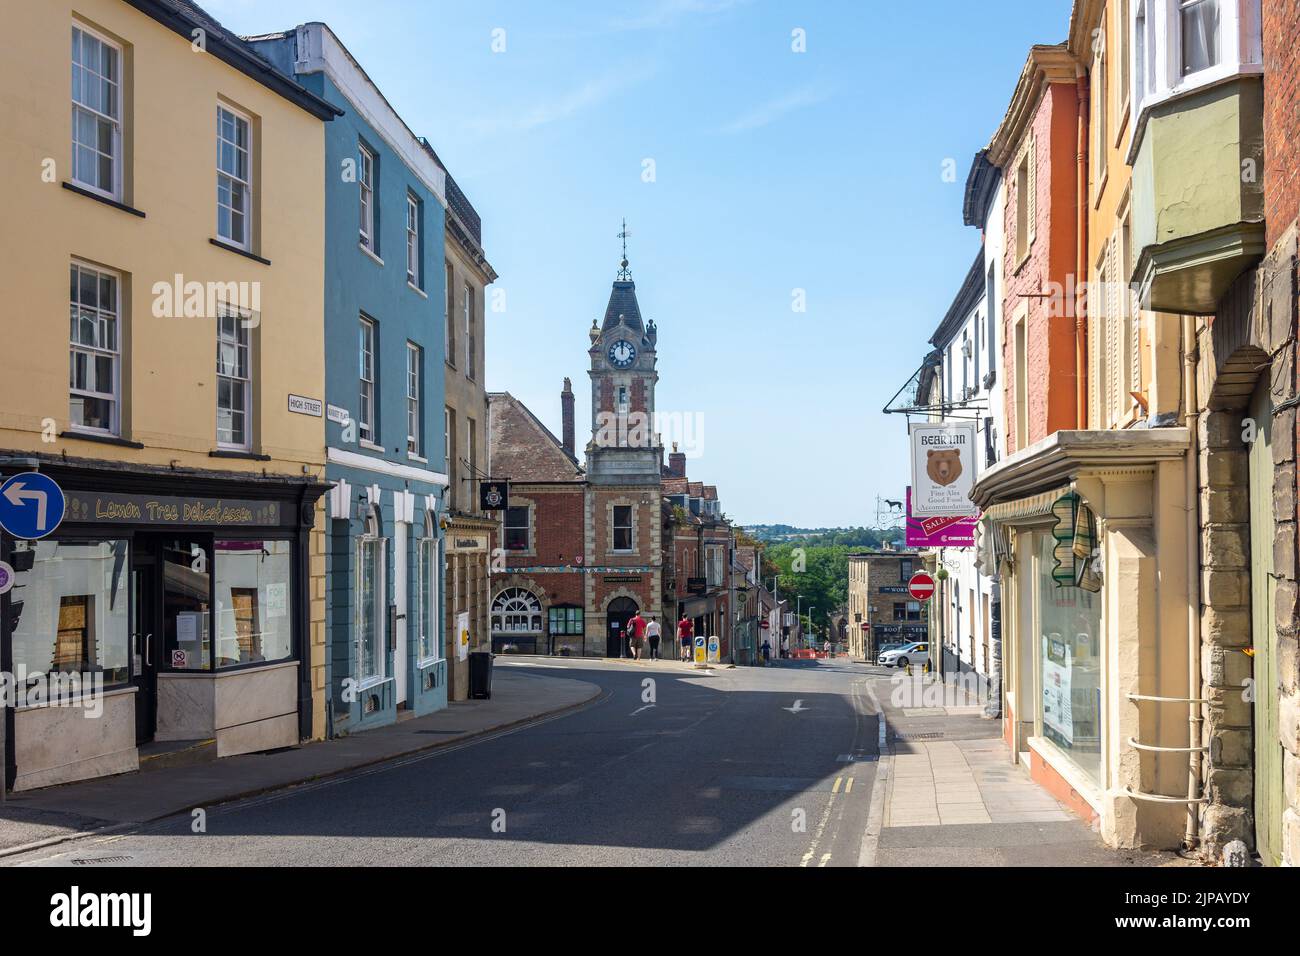 Ayuntamiento Torre del Reloj, Market Place, Wincanton, Somerset, Inglaterra, Reino Unido Foto de stock